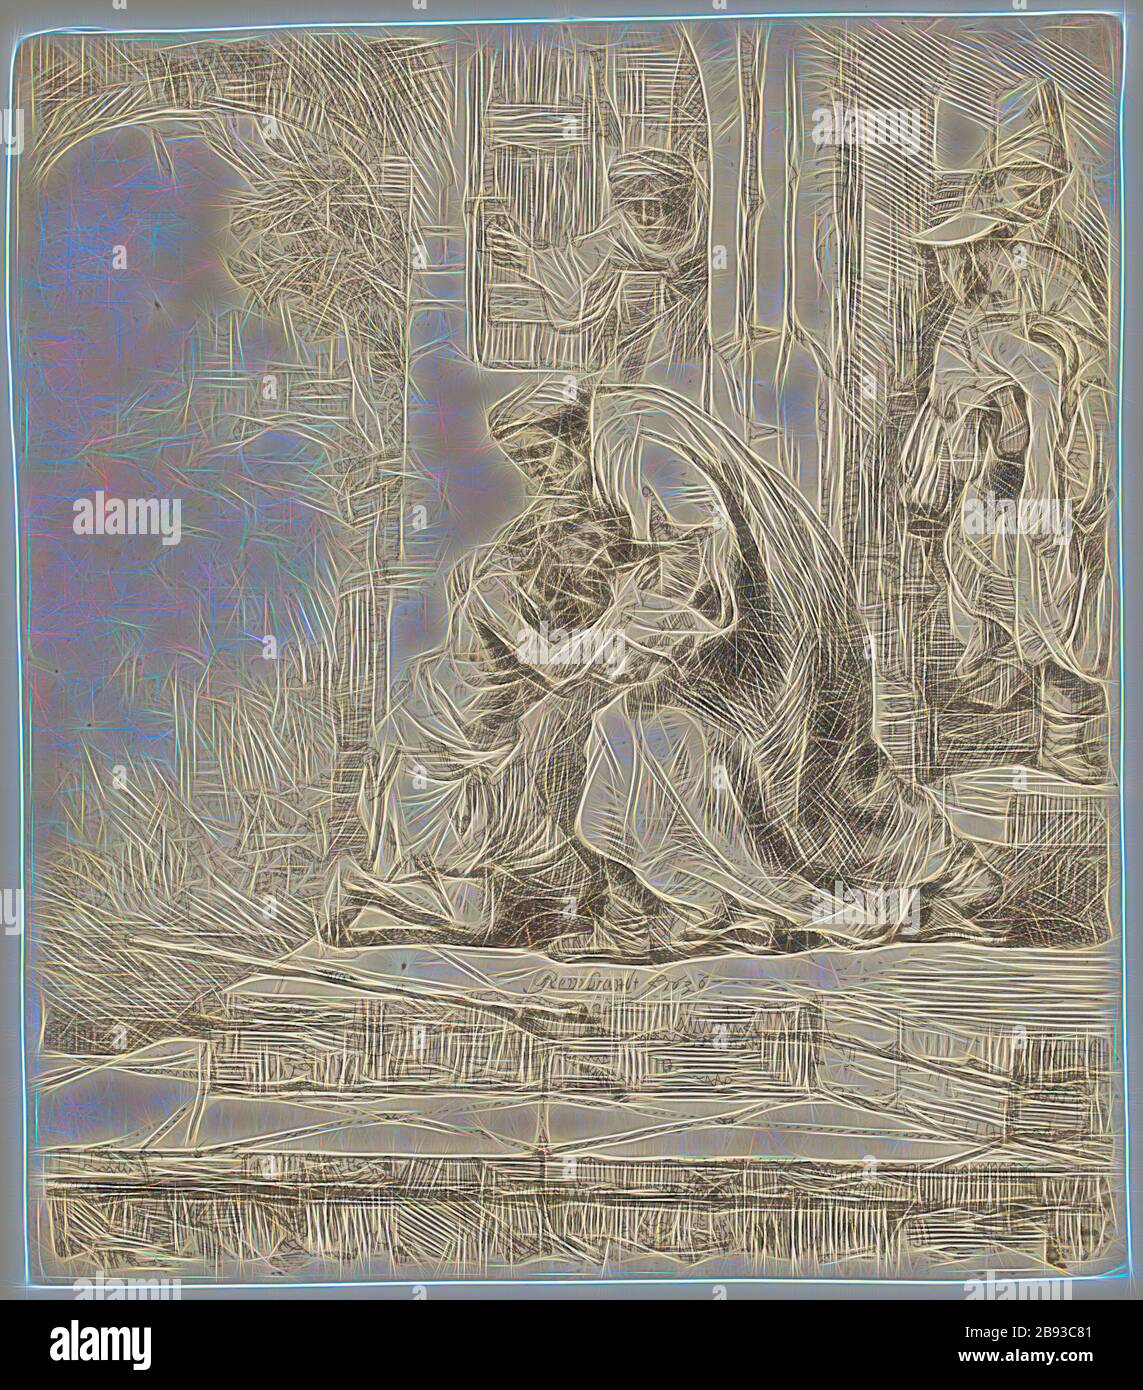 Rembrandt Harmensz van Rijn, niederländisch, 1606-1669, Rückkehr des Prodigal-Sohnes, 1636, Radierung in schwarzer Tinte auf verlegtem Papier, Platte: 15,6 × 13,7 cm (6 1/8 × 5 3/8 Zoll), von Gibon neu erdacht, Design von warmem, fröhlichem Leuchten von Helligkeit und Lichtstrahlen. Klassische Kunst mit moderner Note neu erfunden. Fotografie, inspiriert vom Futurismus, die dynamische Energie moderner Technologie, Bewegung, Geschwindigkeit und Kultur revolutionieren. Stockfoto